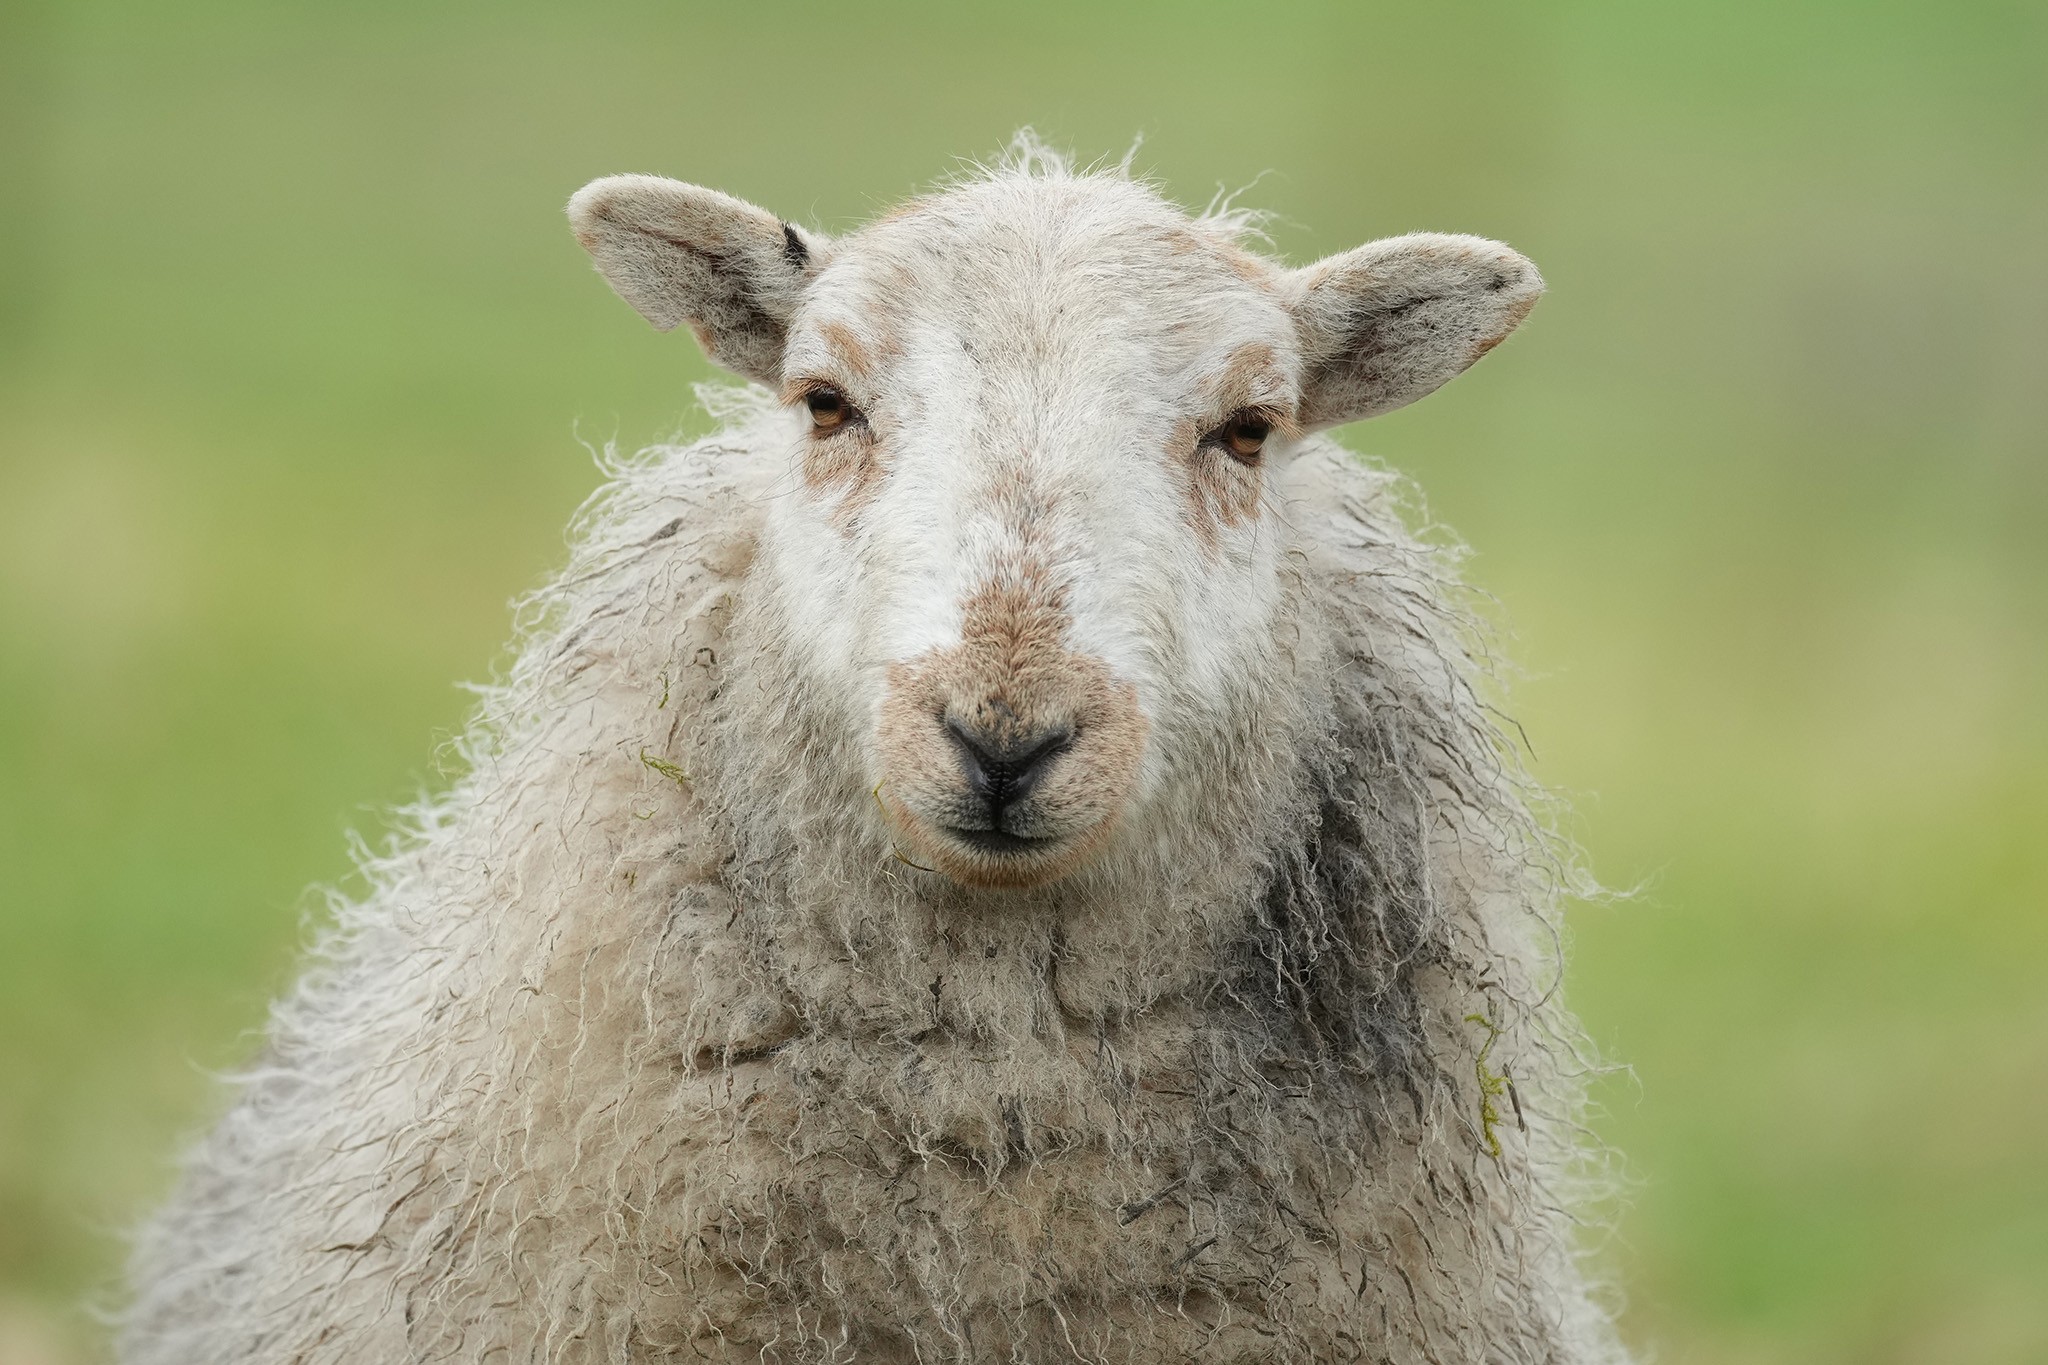 Sheep-DSC01134-2048px.jpg